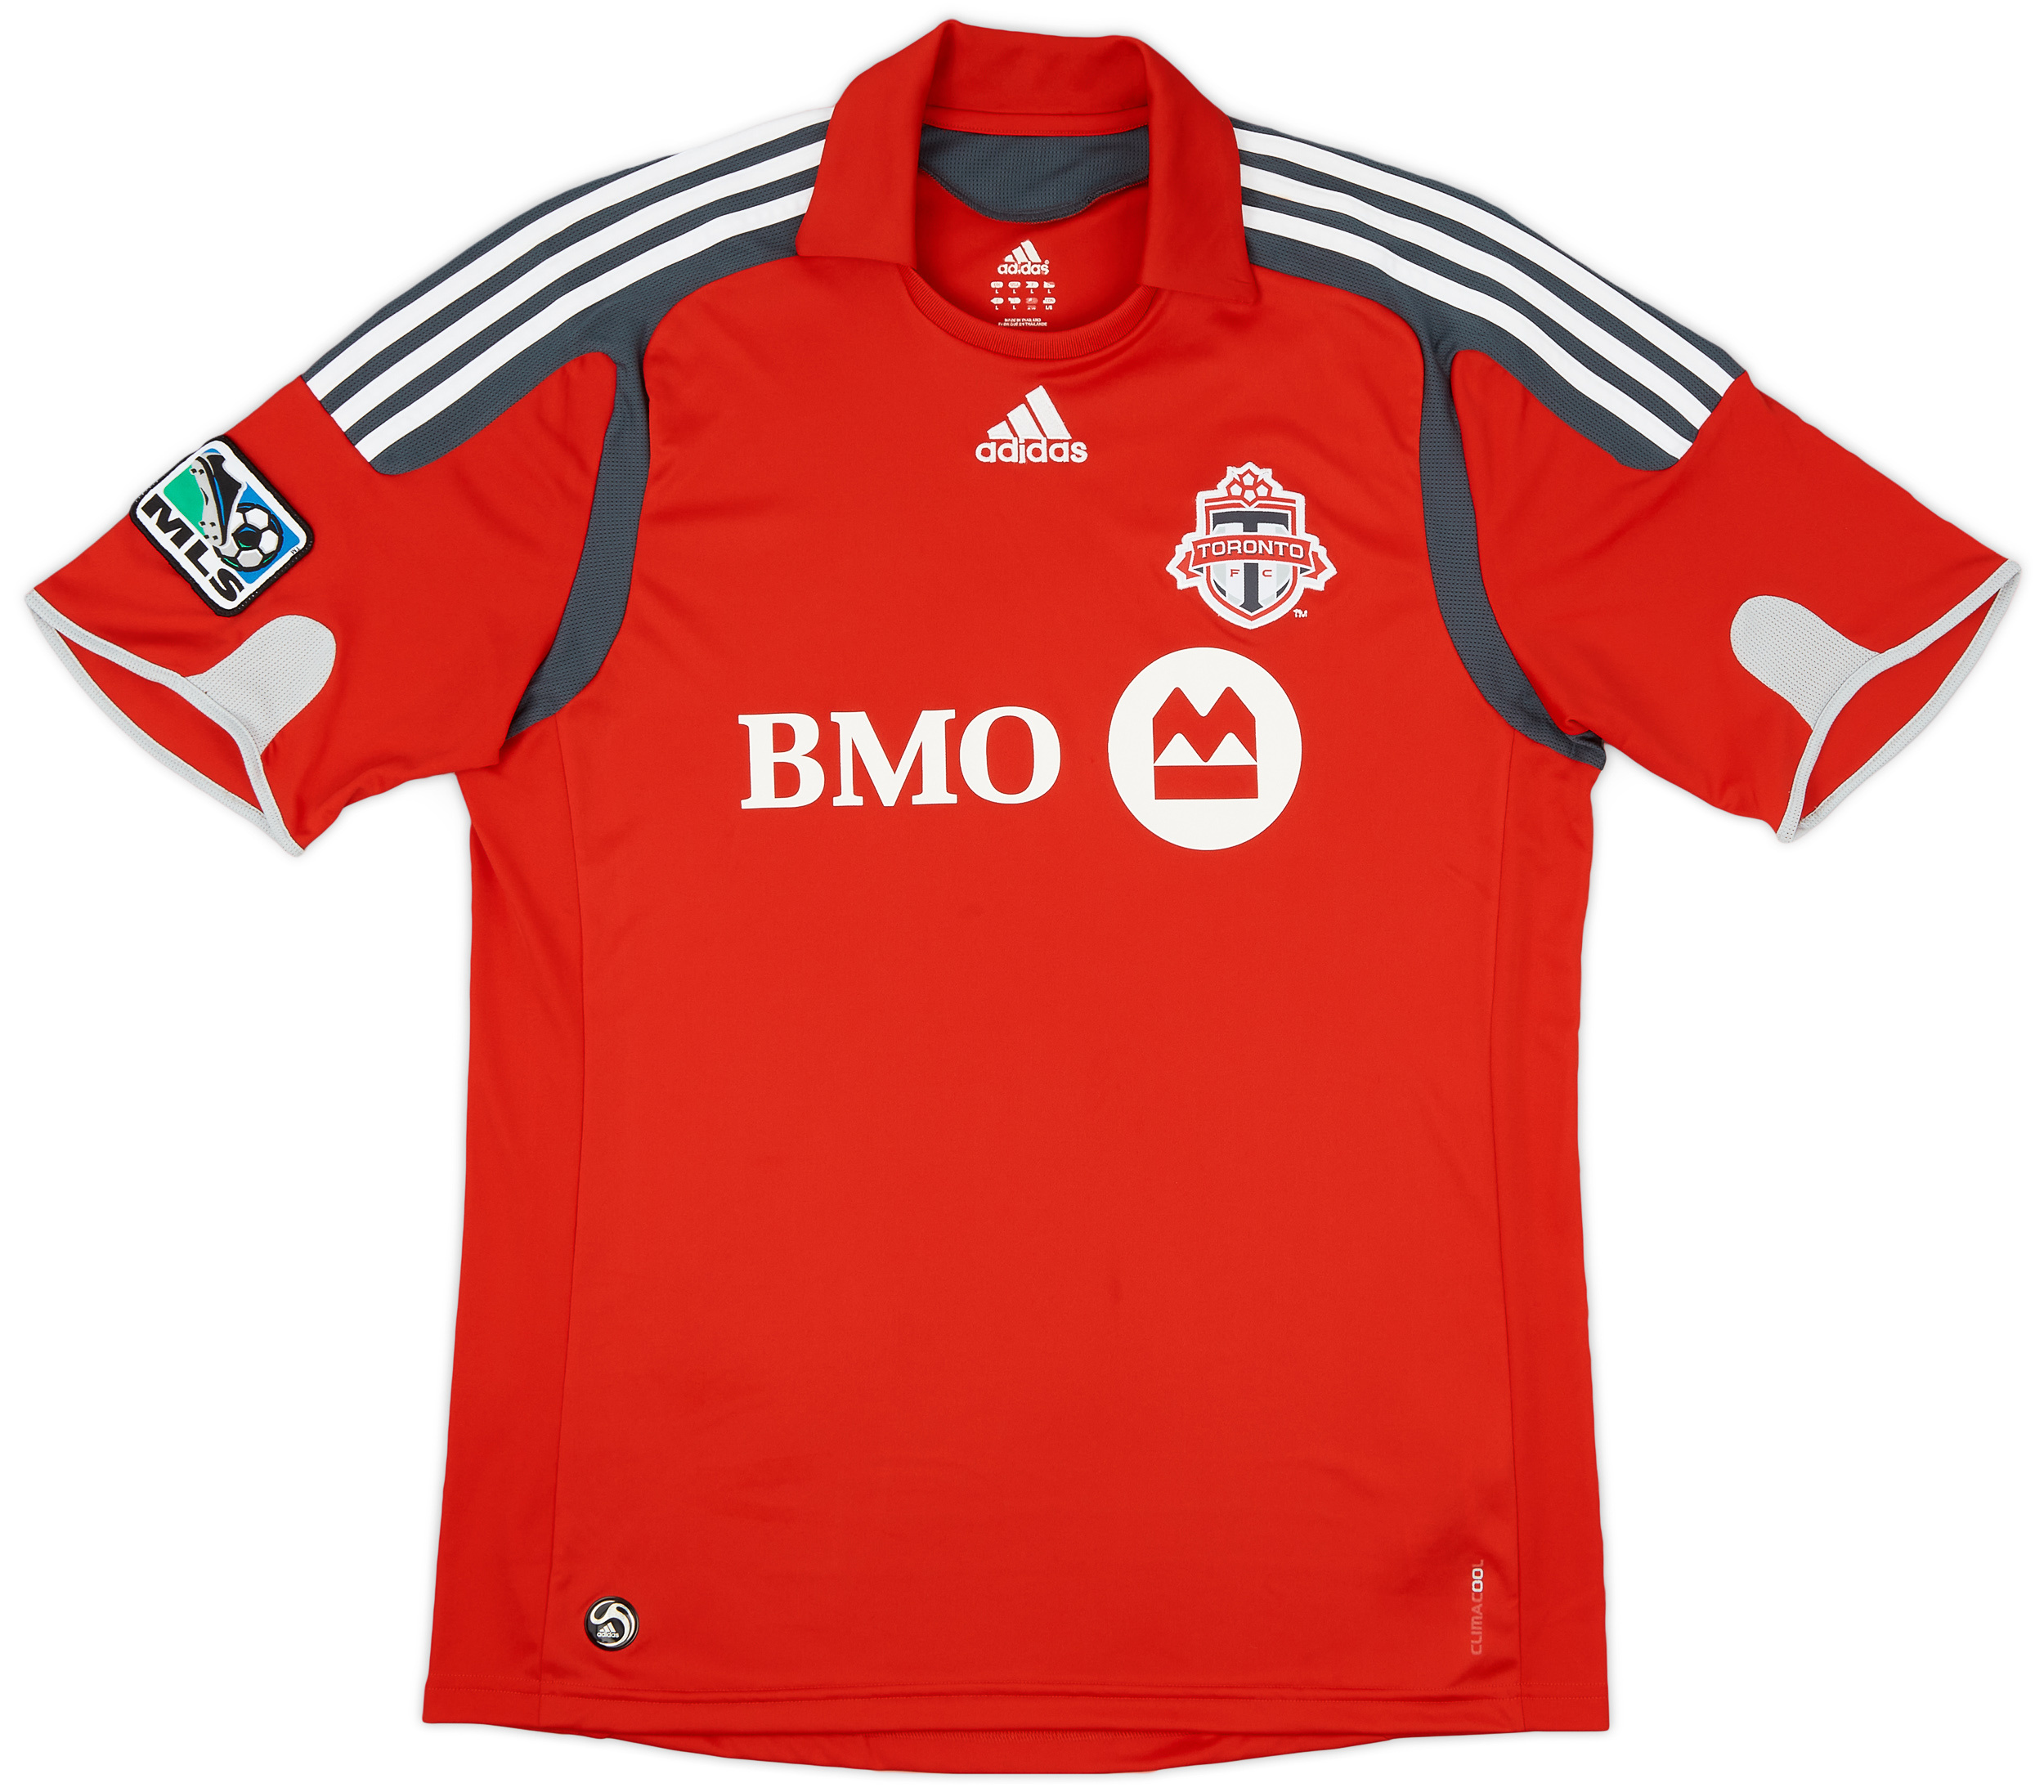 Retro Toronto FC Shirt